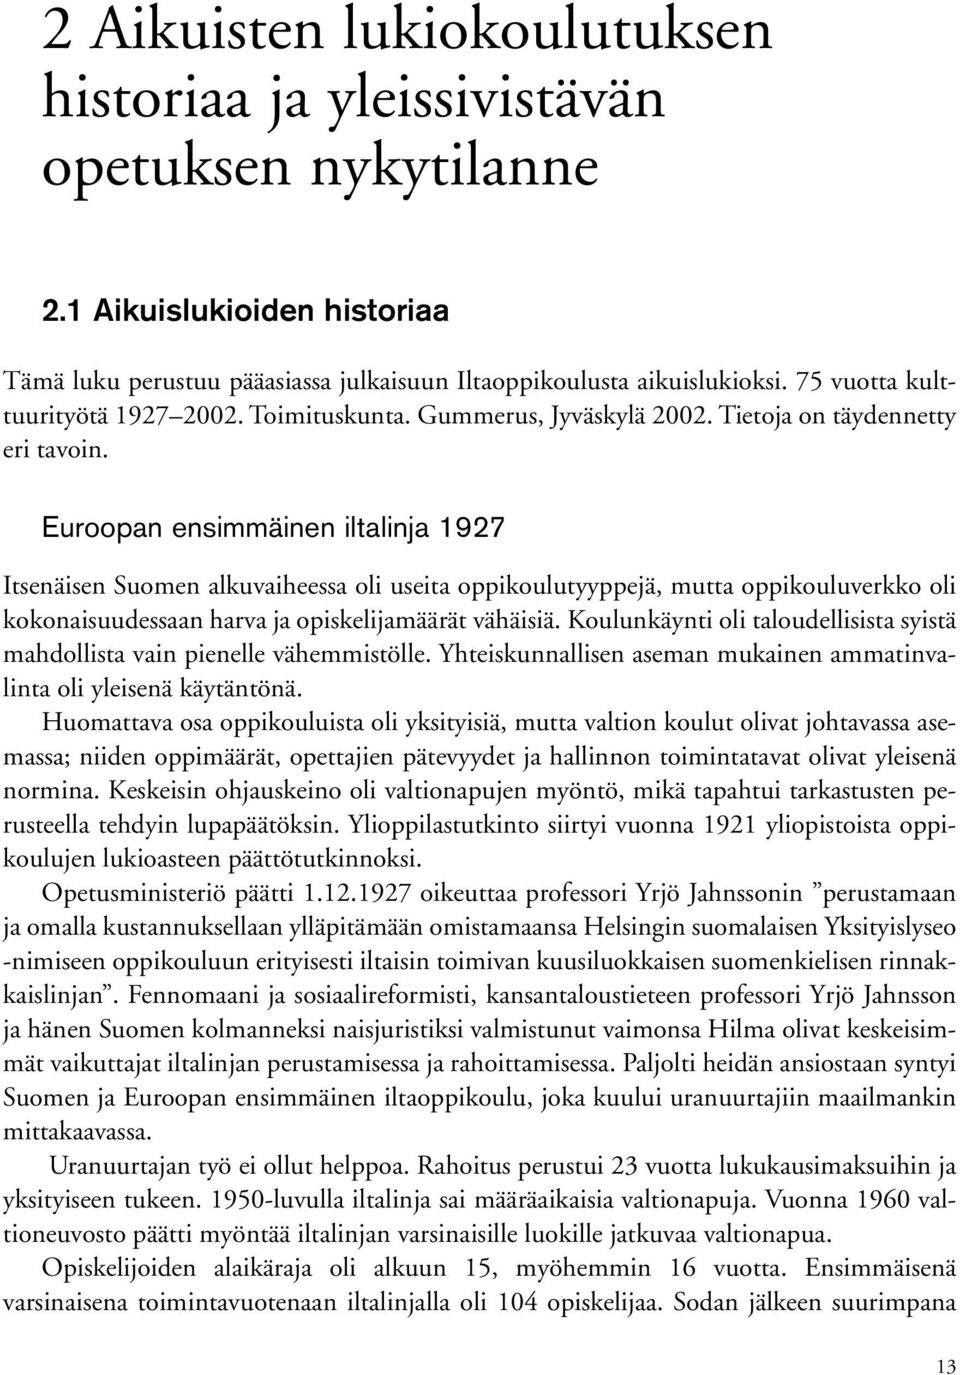 Euroopan ensimmäinen iltalinja 1927 Itsenäisen Suomen alkuvaiheessa oli useita oppikoulutyyppejä, mutta oppikouluverkko oli kokonaisuudessaan harva ja opiskelijamäärät vähäisiä.